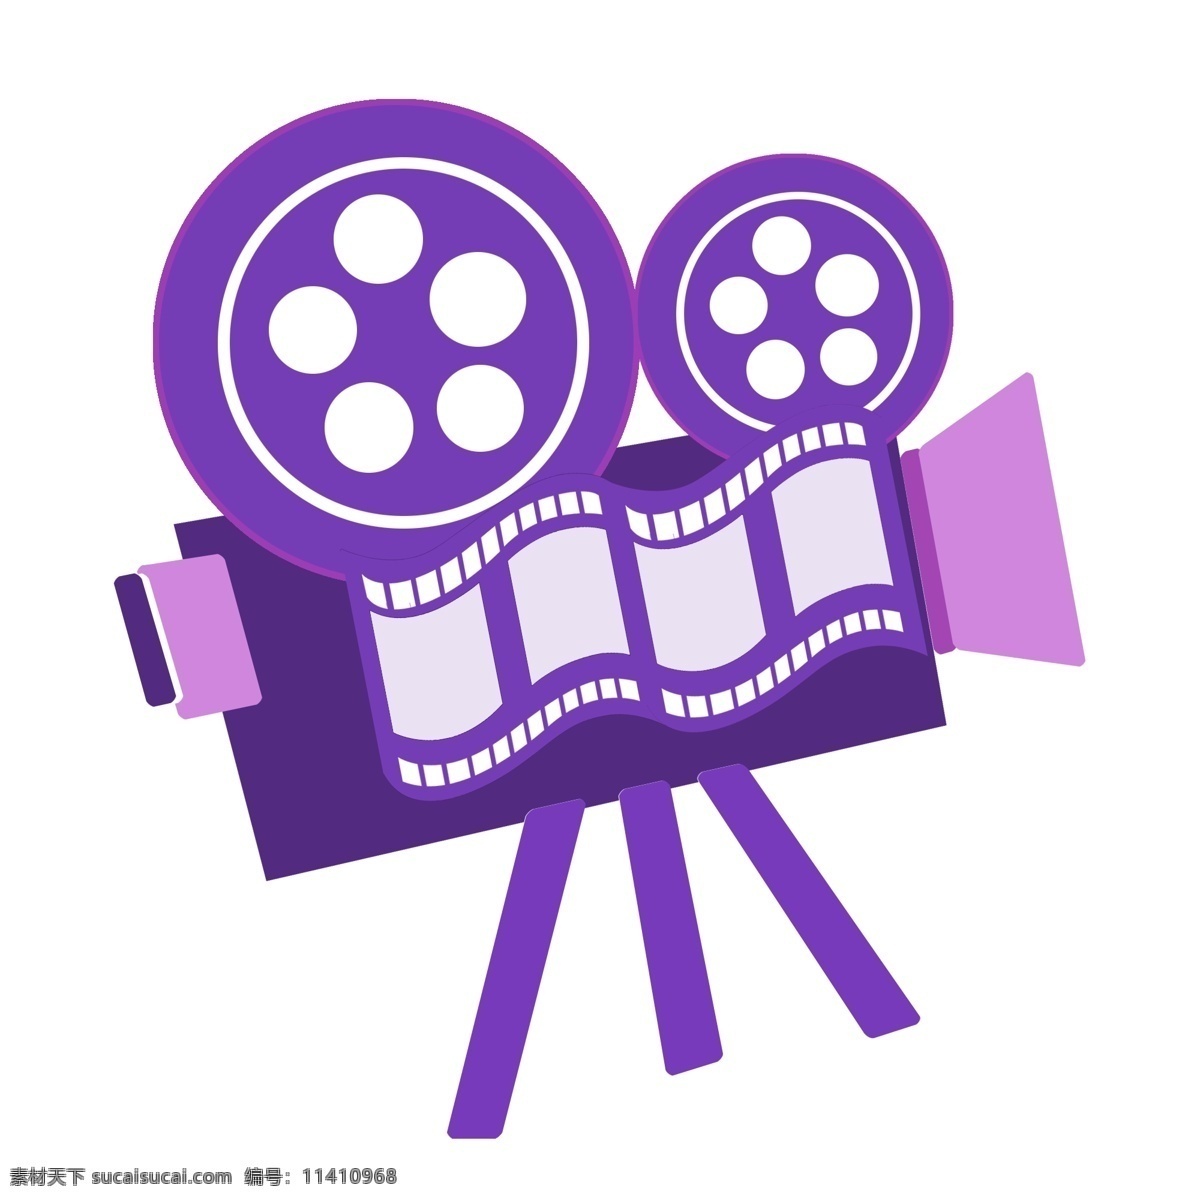 紫色 电影 播放器 插画 紫色的播放器 卡通插画 电影插画 电影工具 电影相关 电影器具 电影播放器